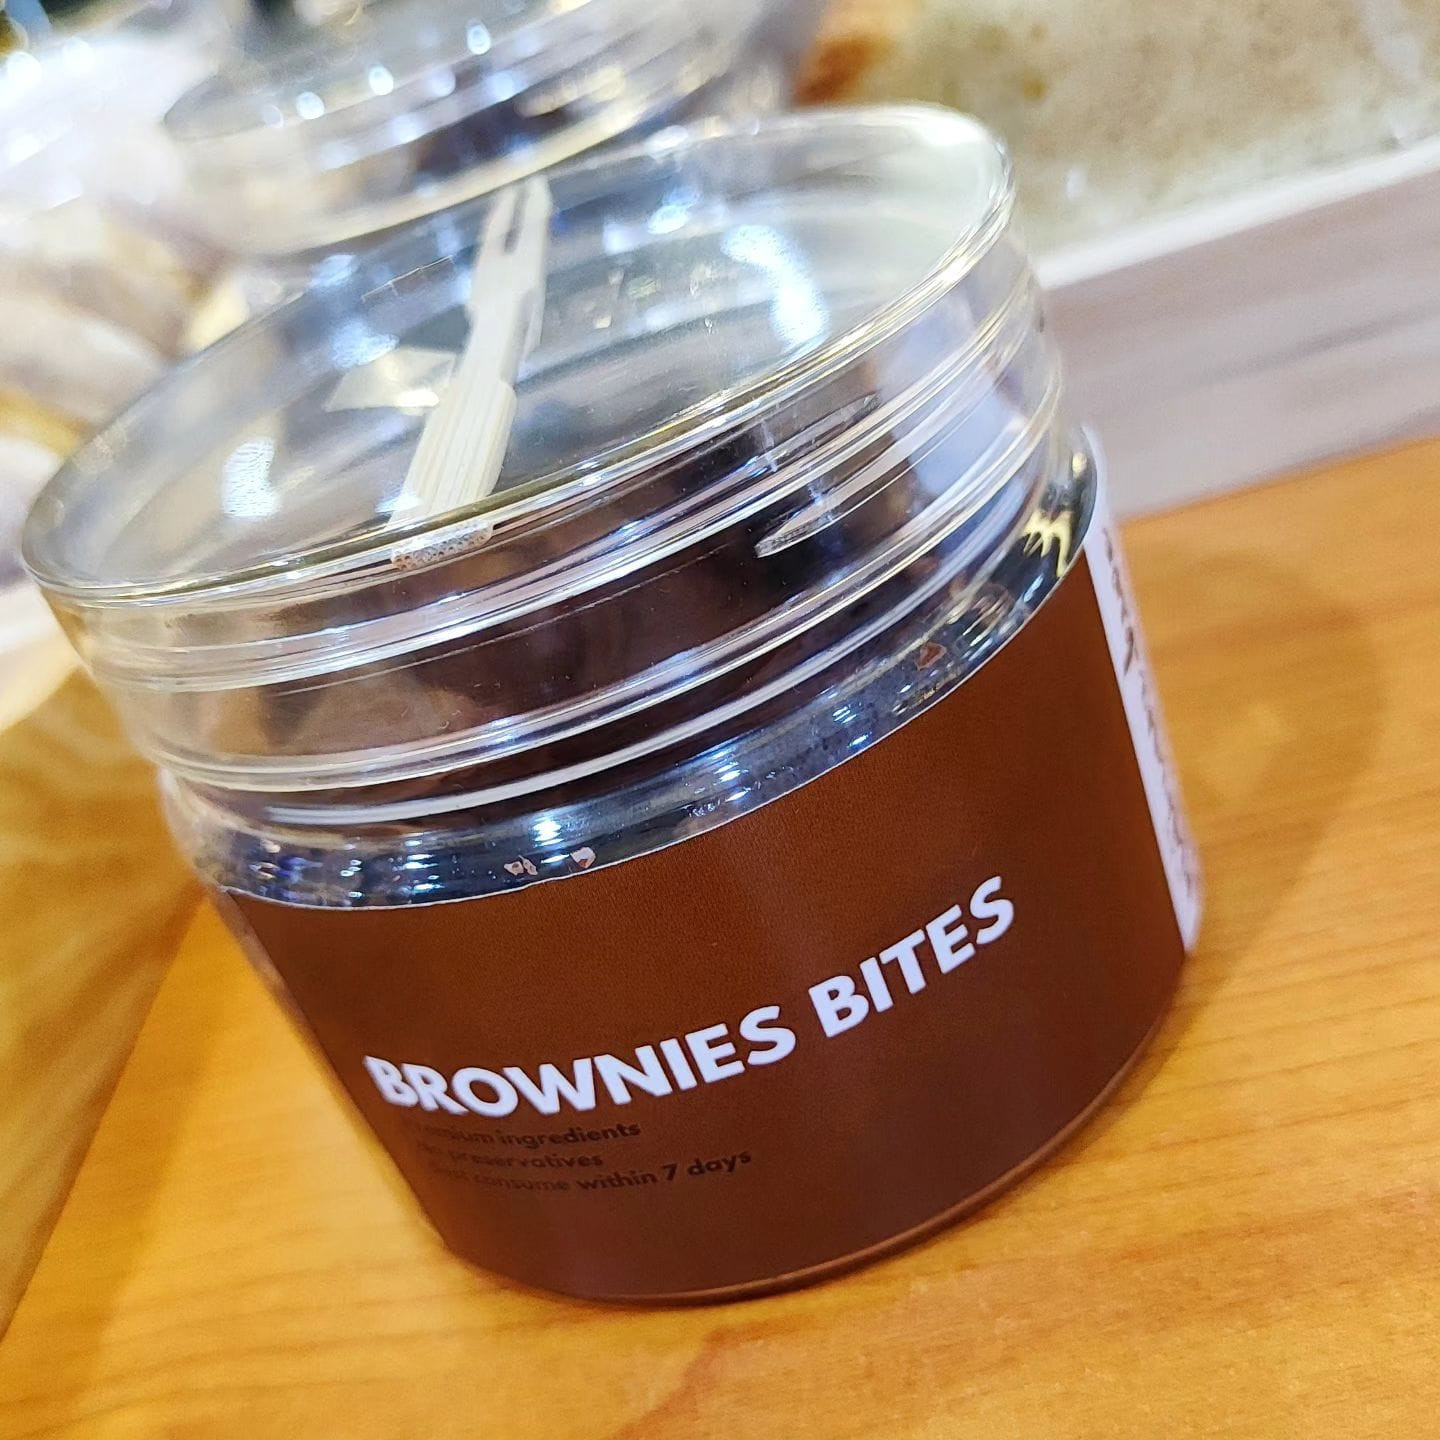 Brownies Bites - Cup Version